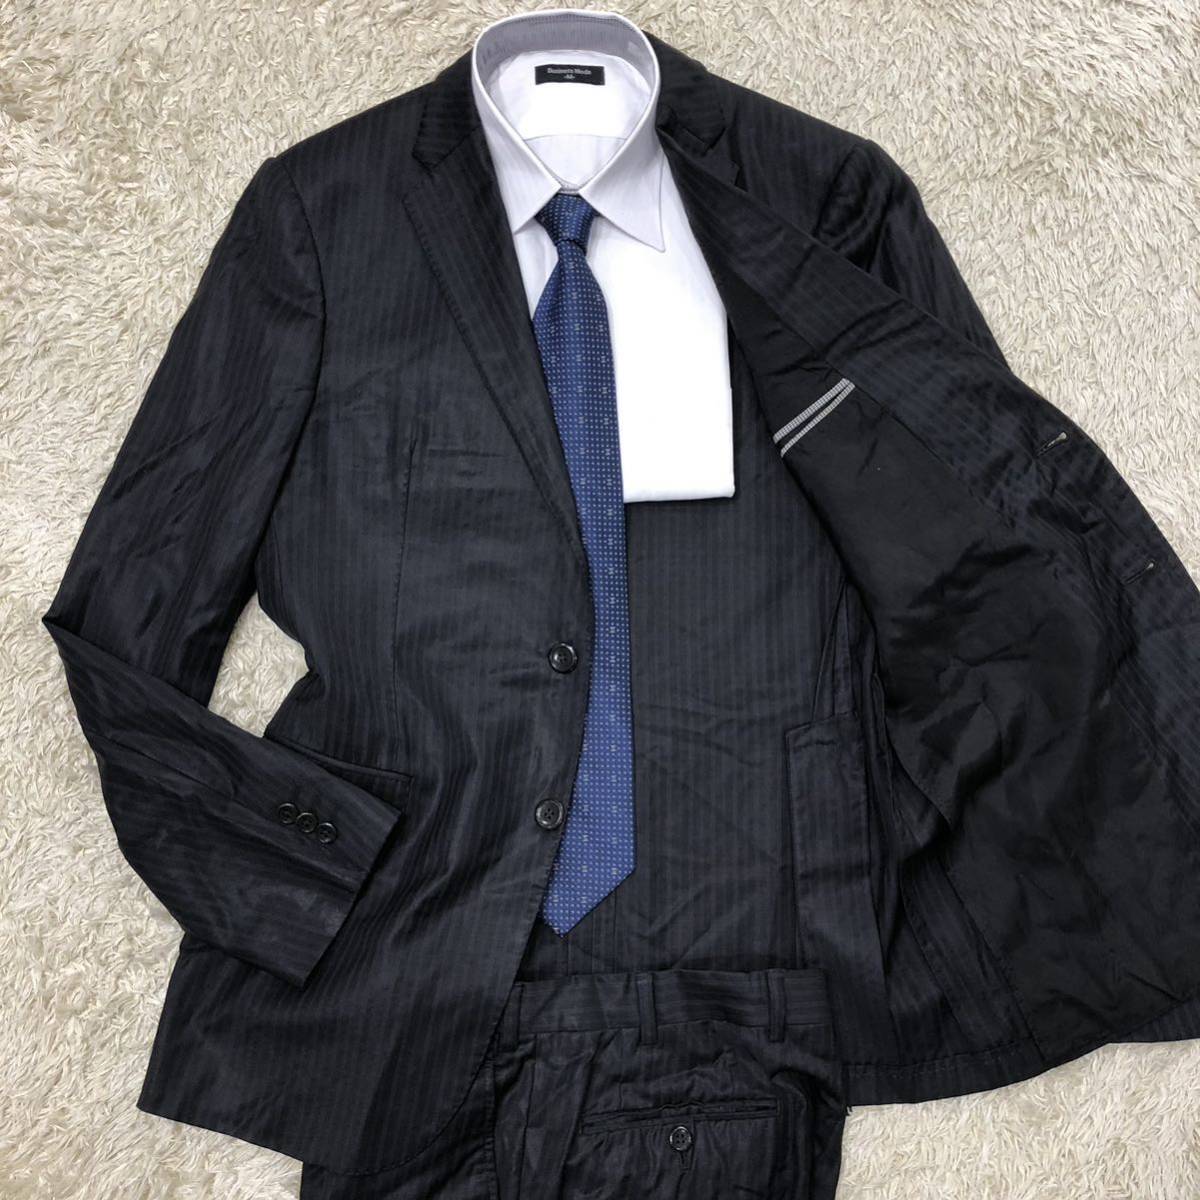 マッケンジー 美品 ストライプ 上質ウール100% スーツ セットアップ 黒-